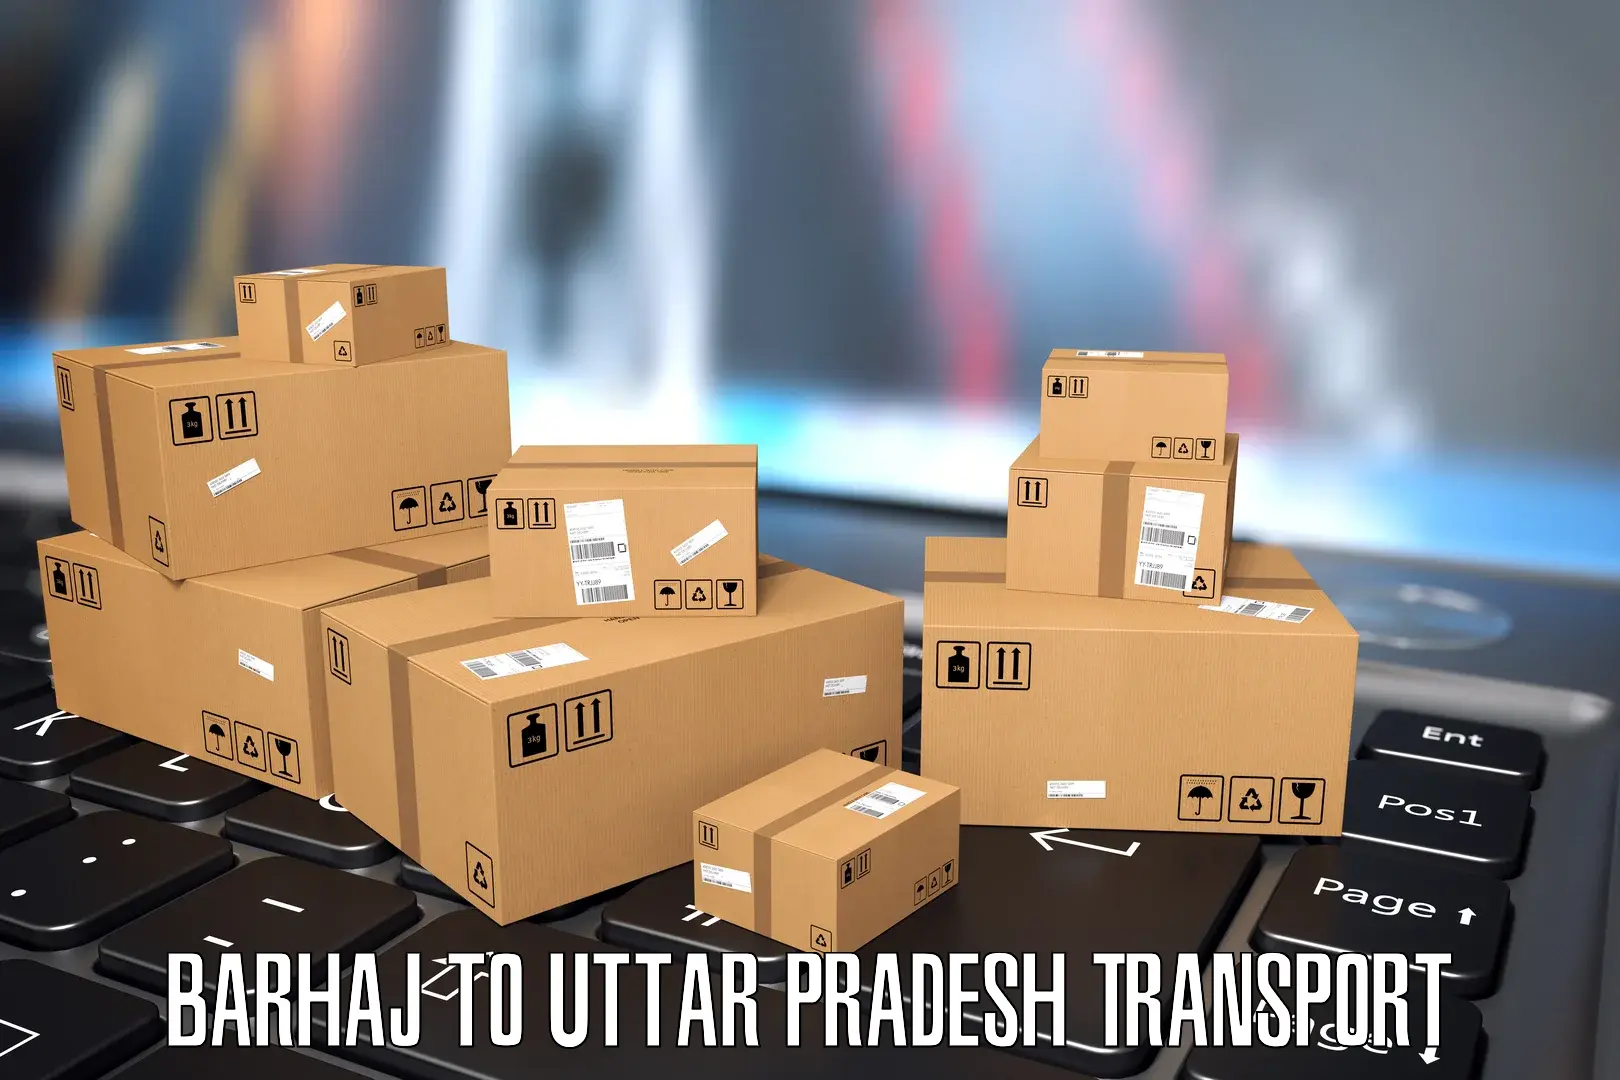 Container transport service Barhaj to Tilhar